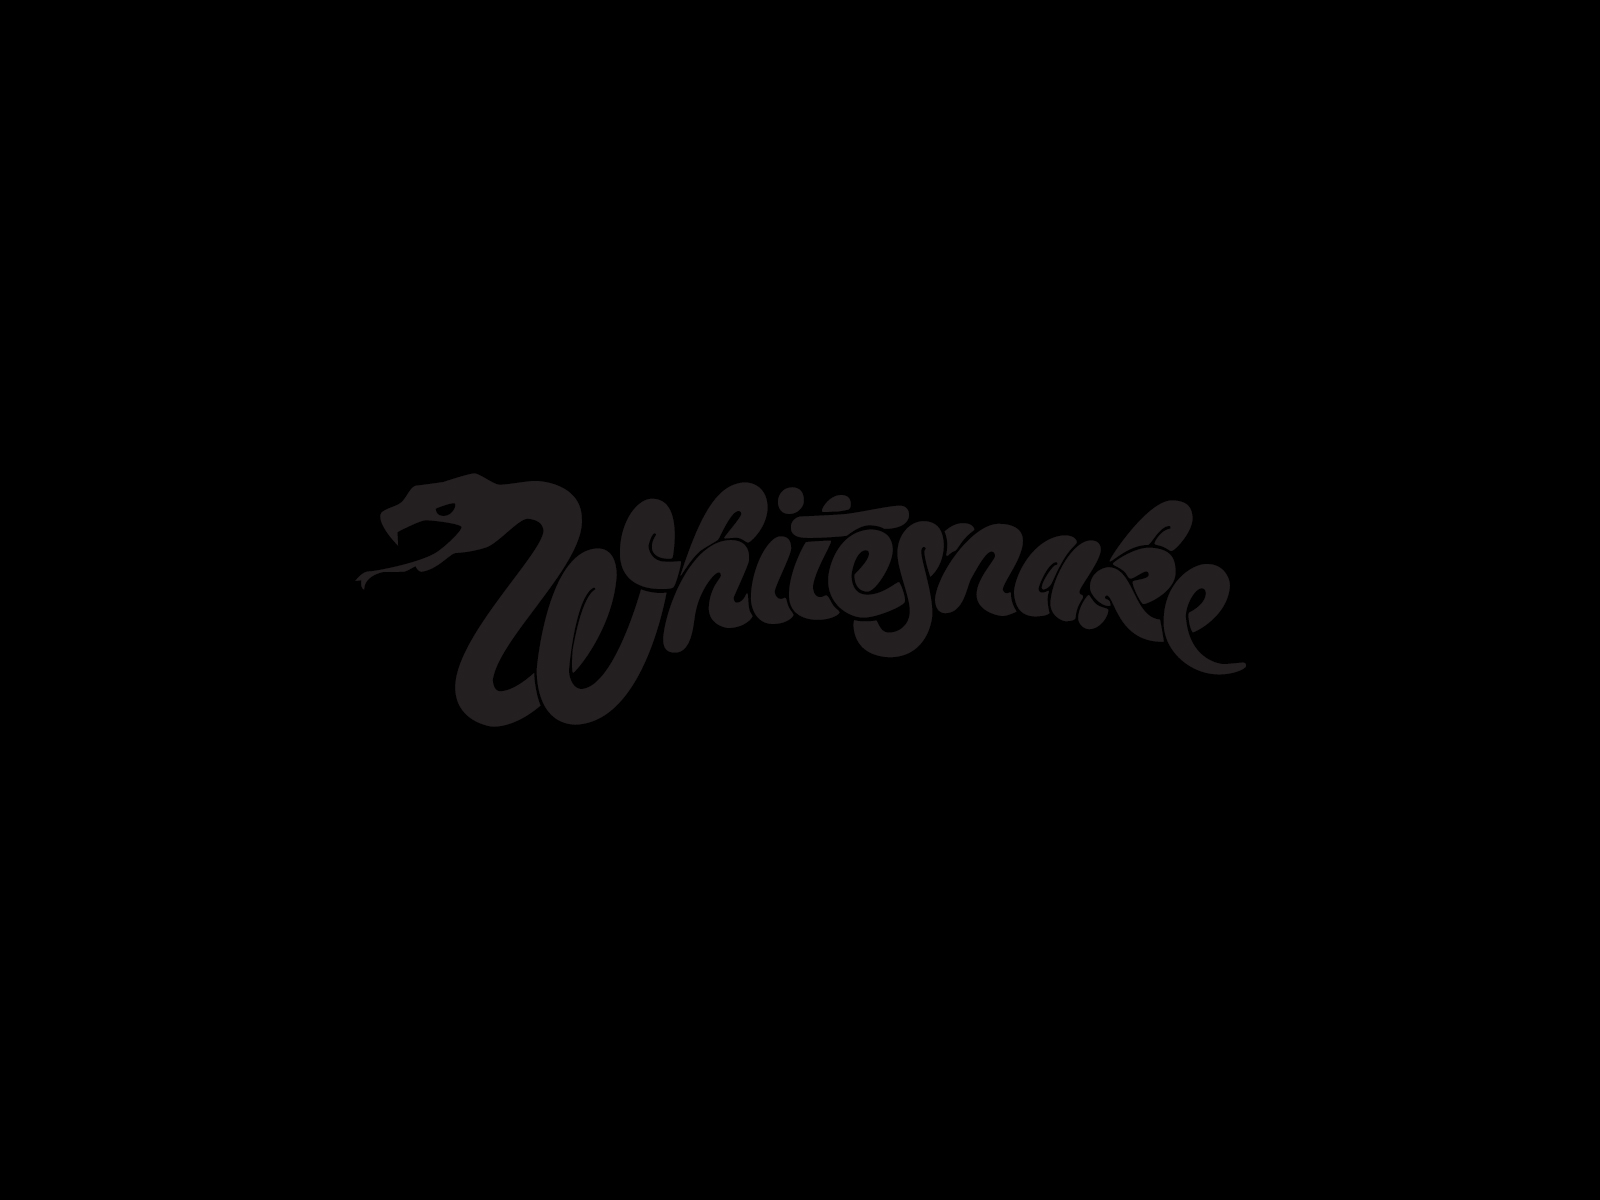 Whitesnake Band Logo And Wallpaper